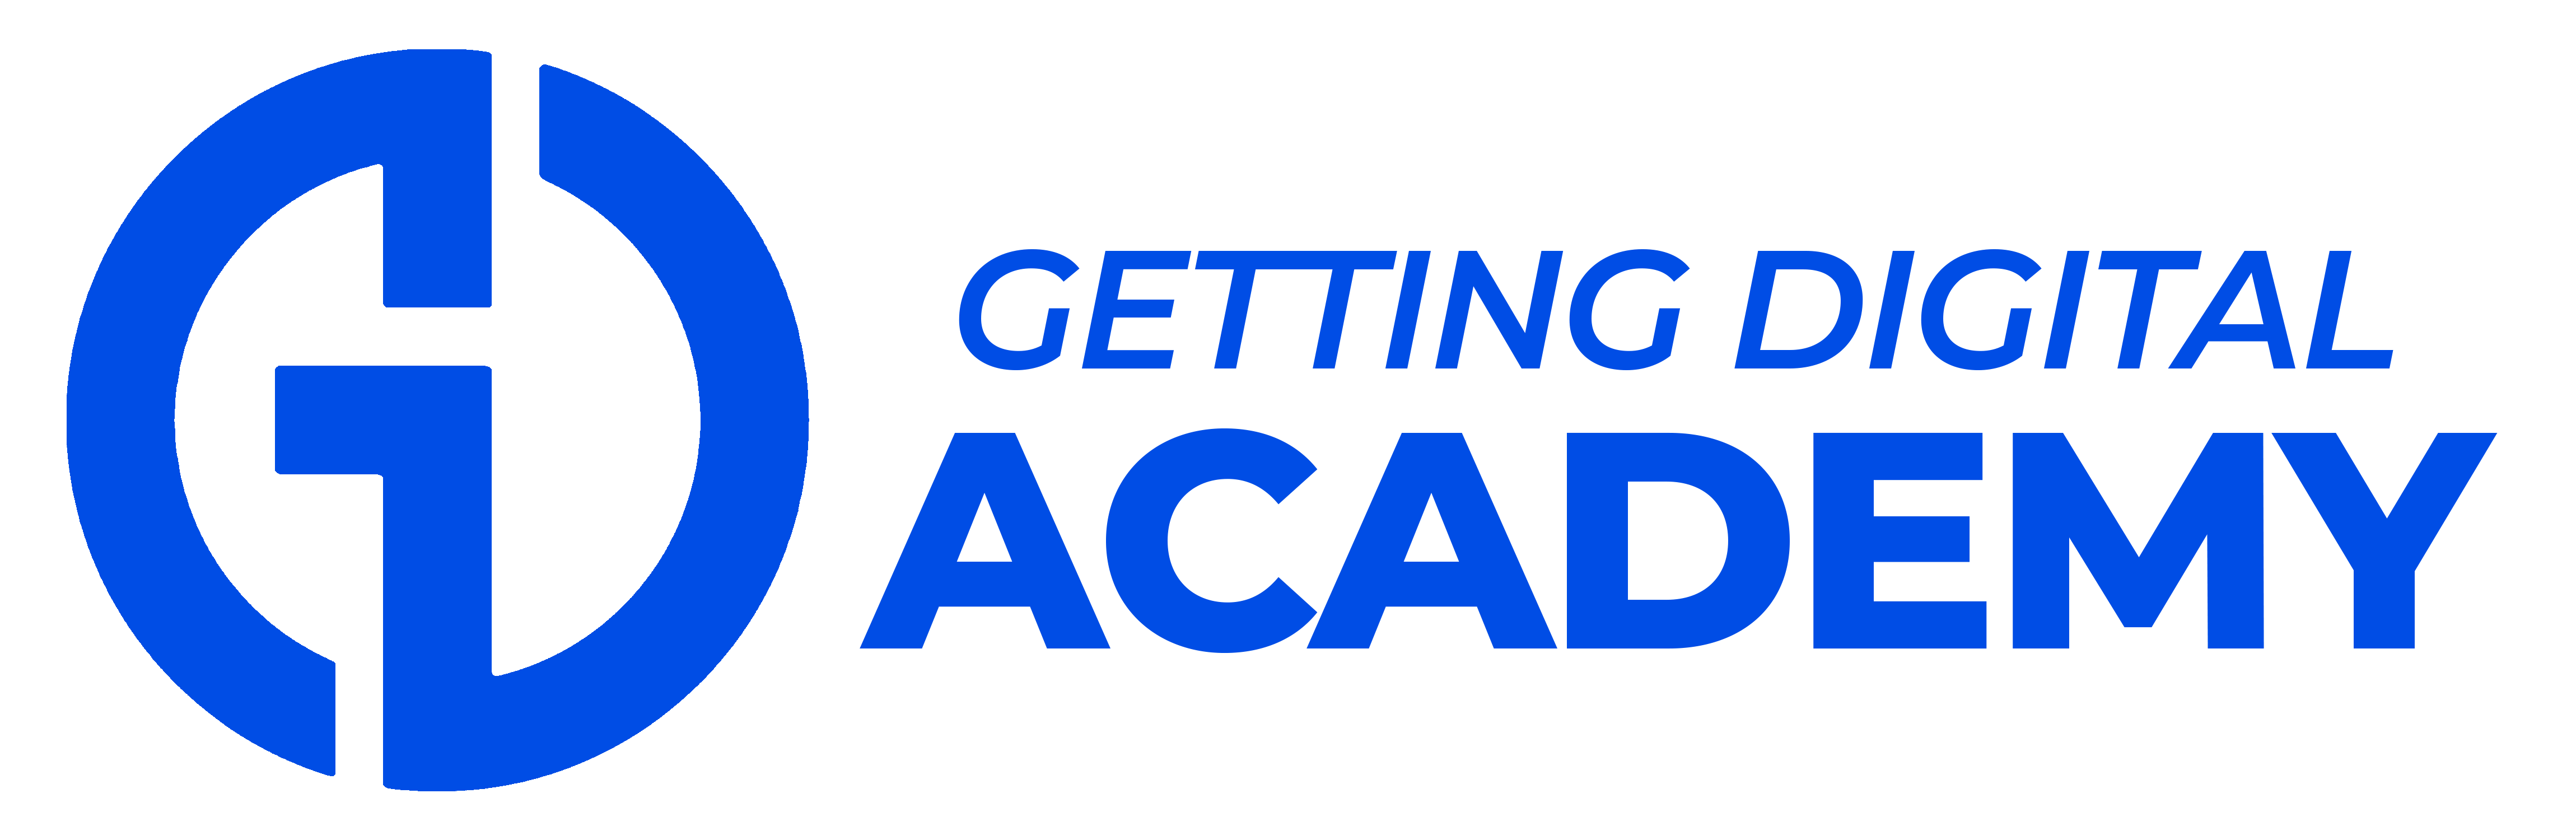 Getting Digital Academy